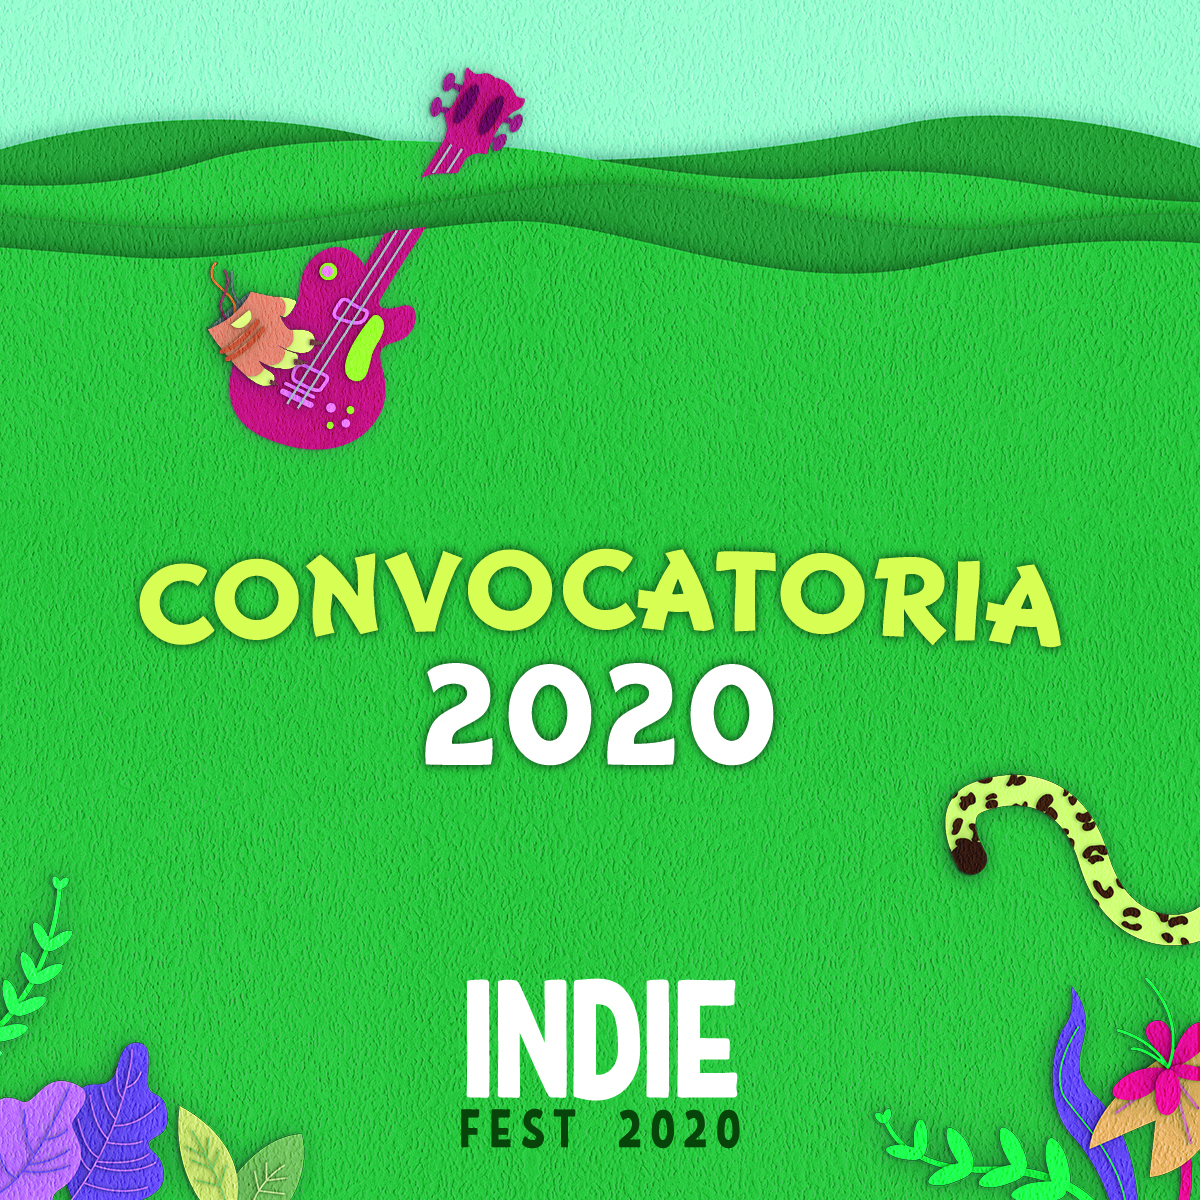 Indie Fest 2020Convocatoria , 